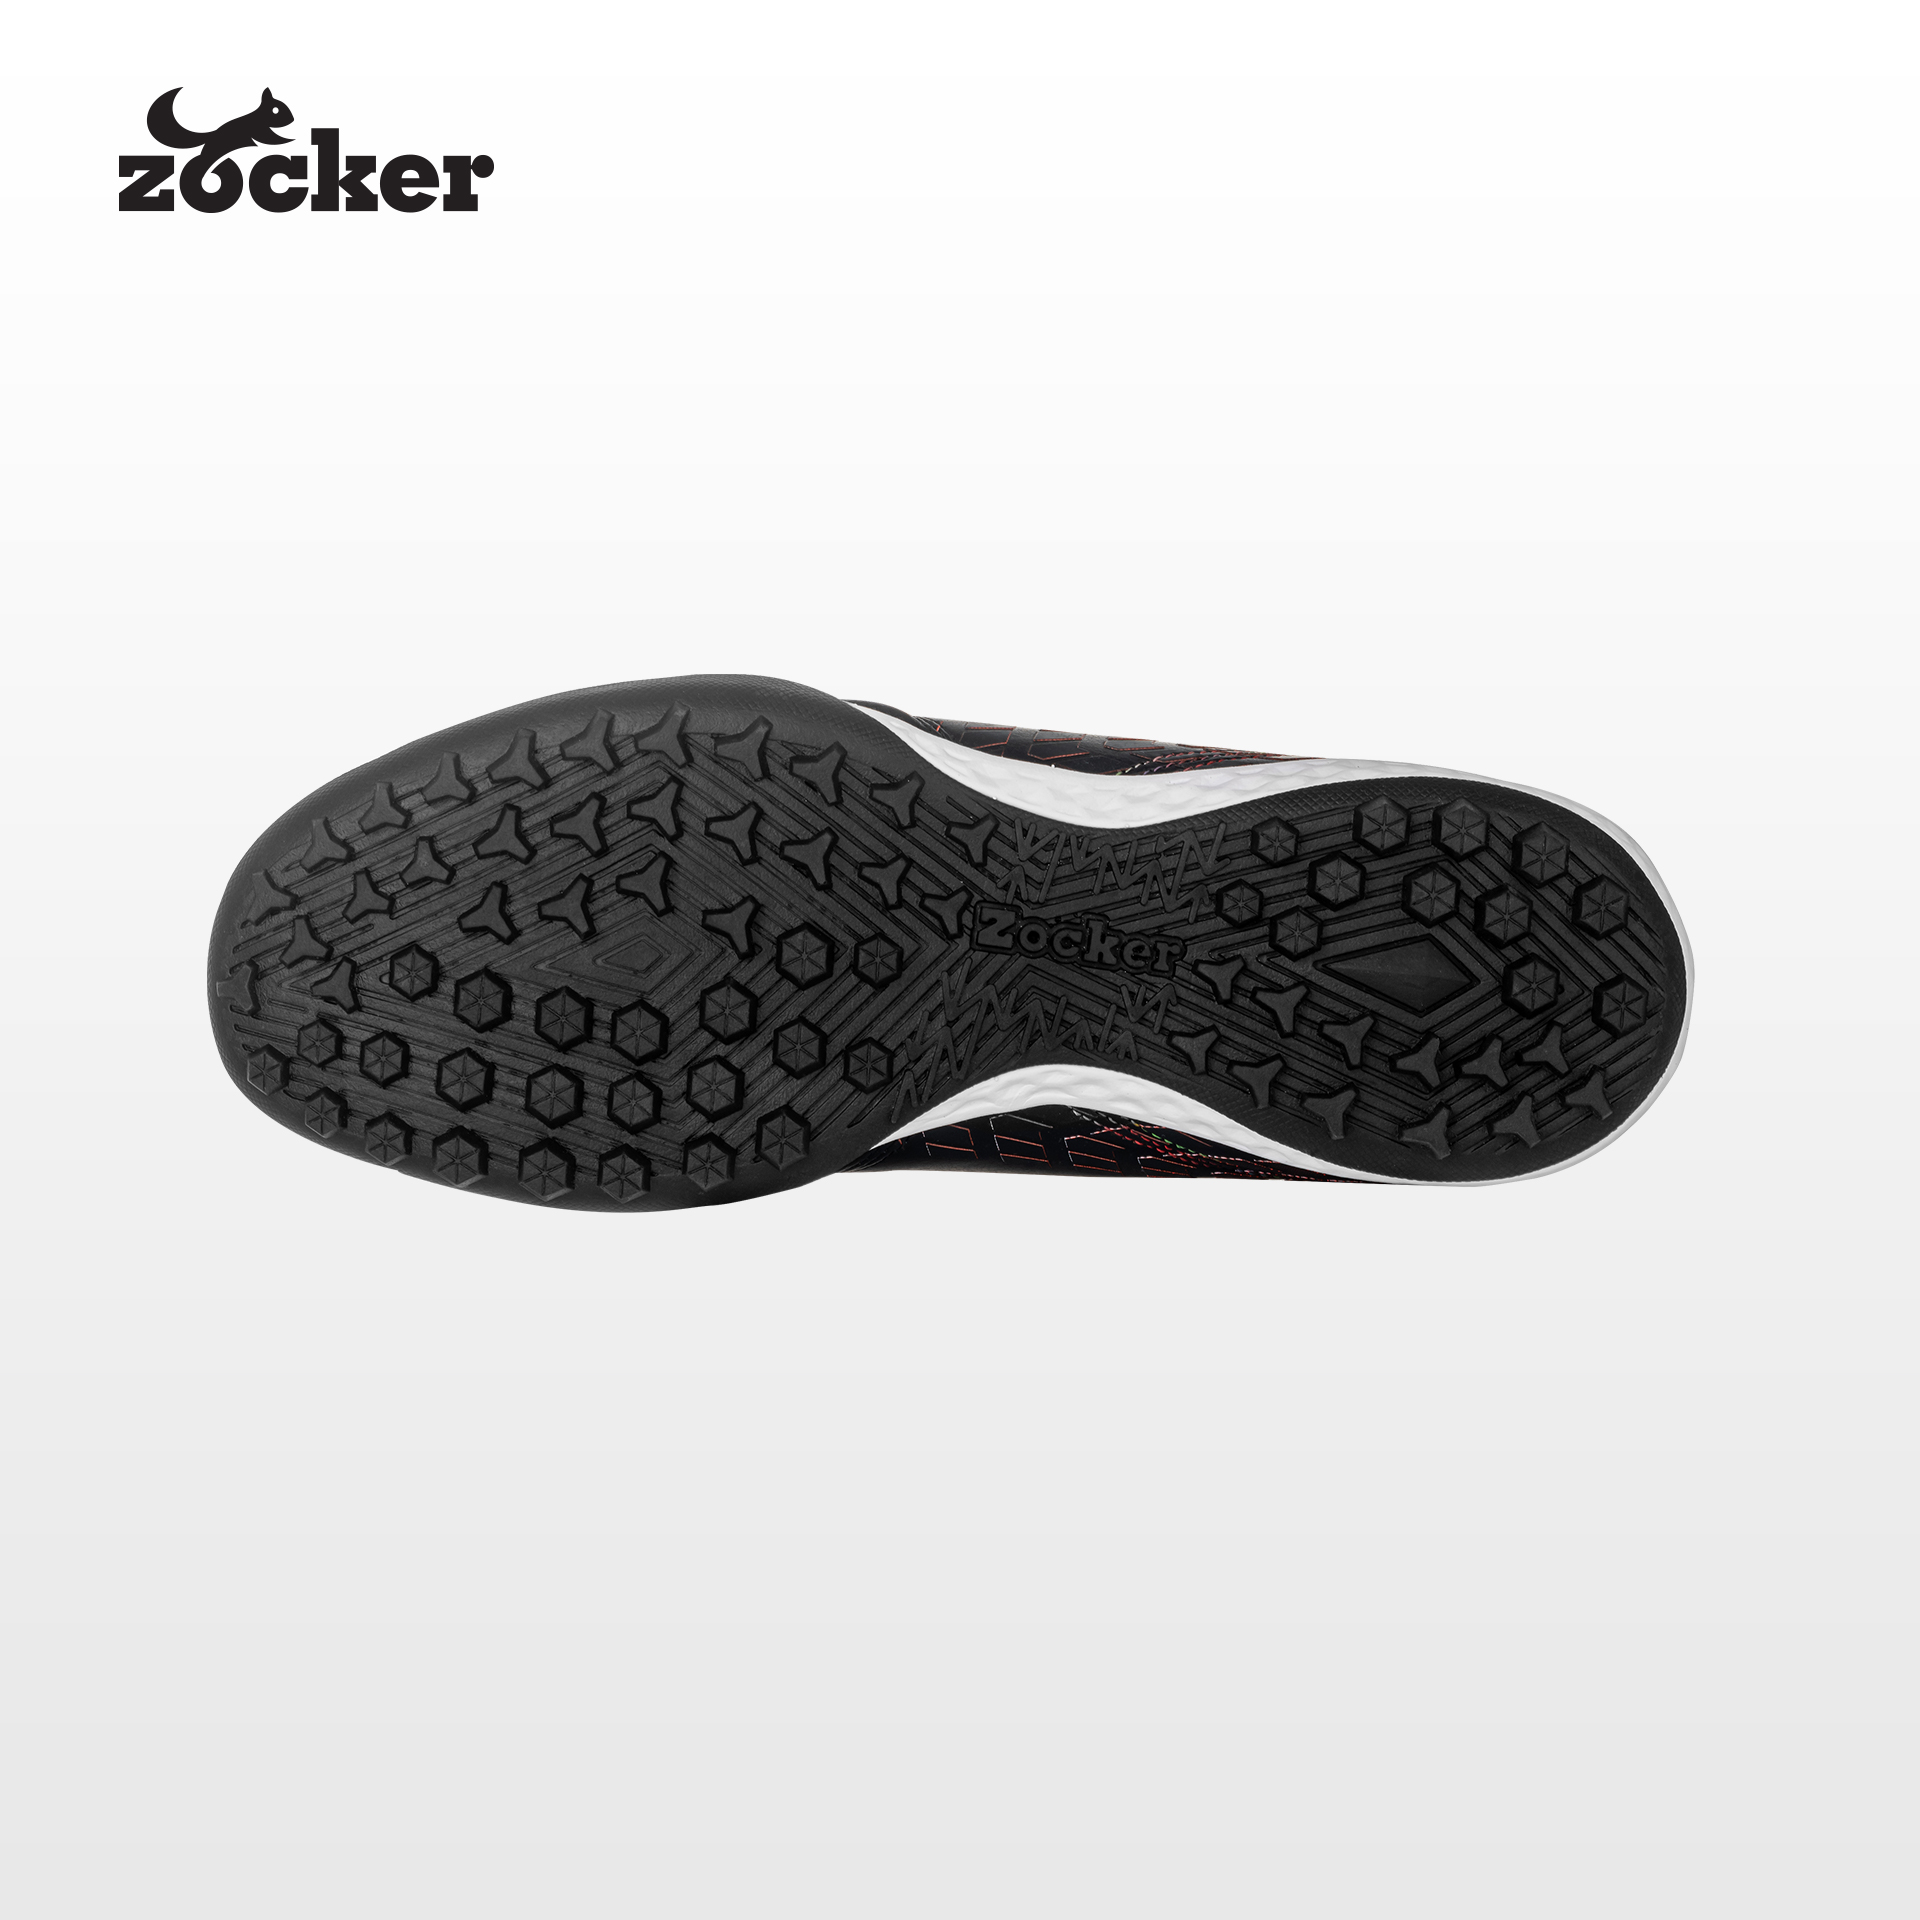 Giày Đá Bóng Da Thật Zocker #PIONEER Black, Êm Ái, Mềm Mại, Bền Bỉ - Tặng Kèm Tất